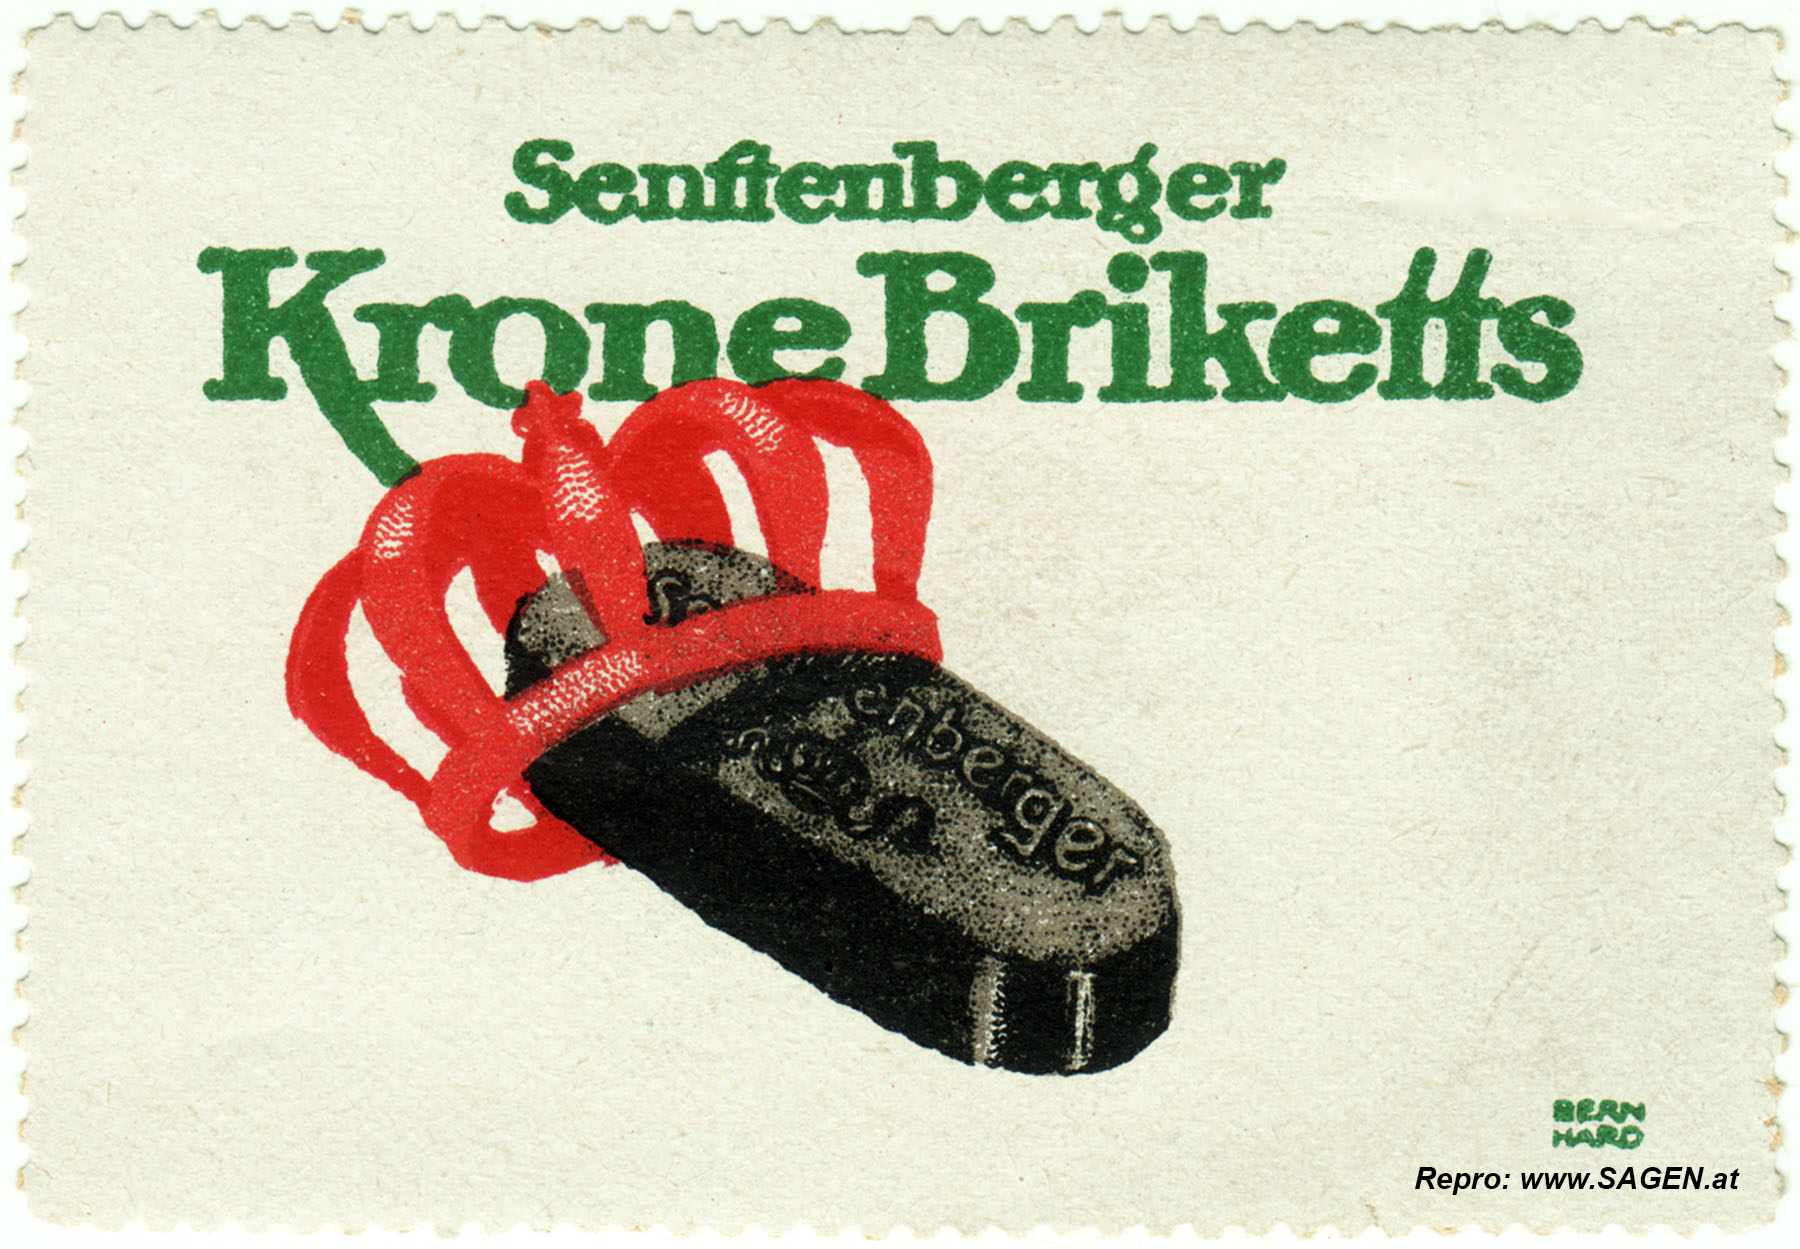 Reklamemarke Senftenberger Krone Briketts